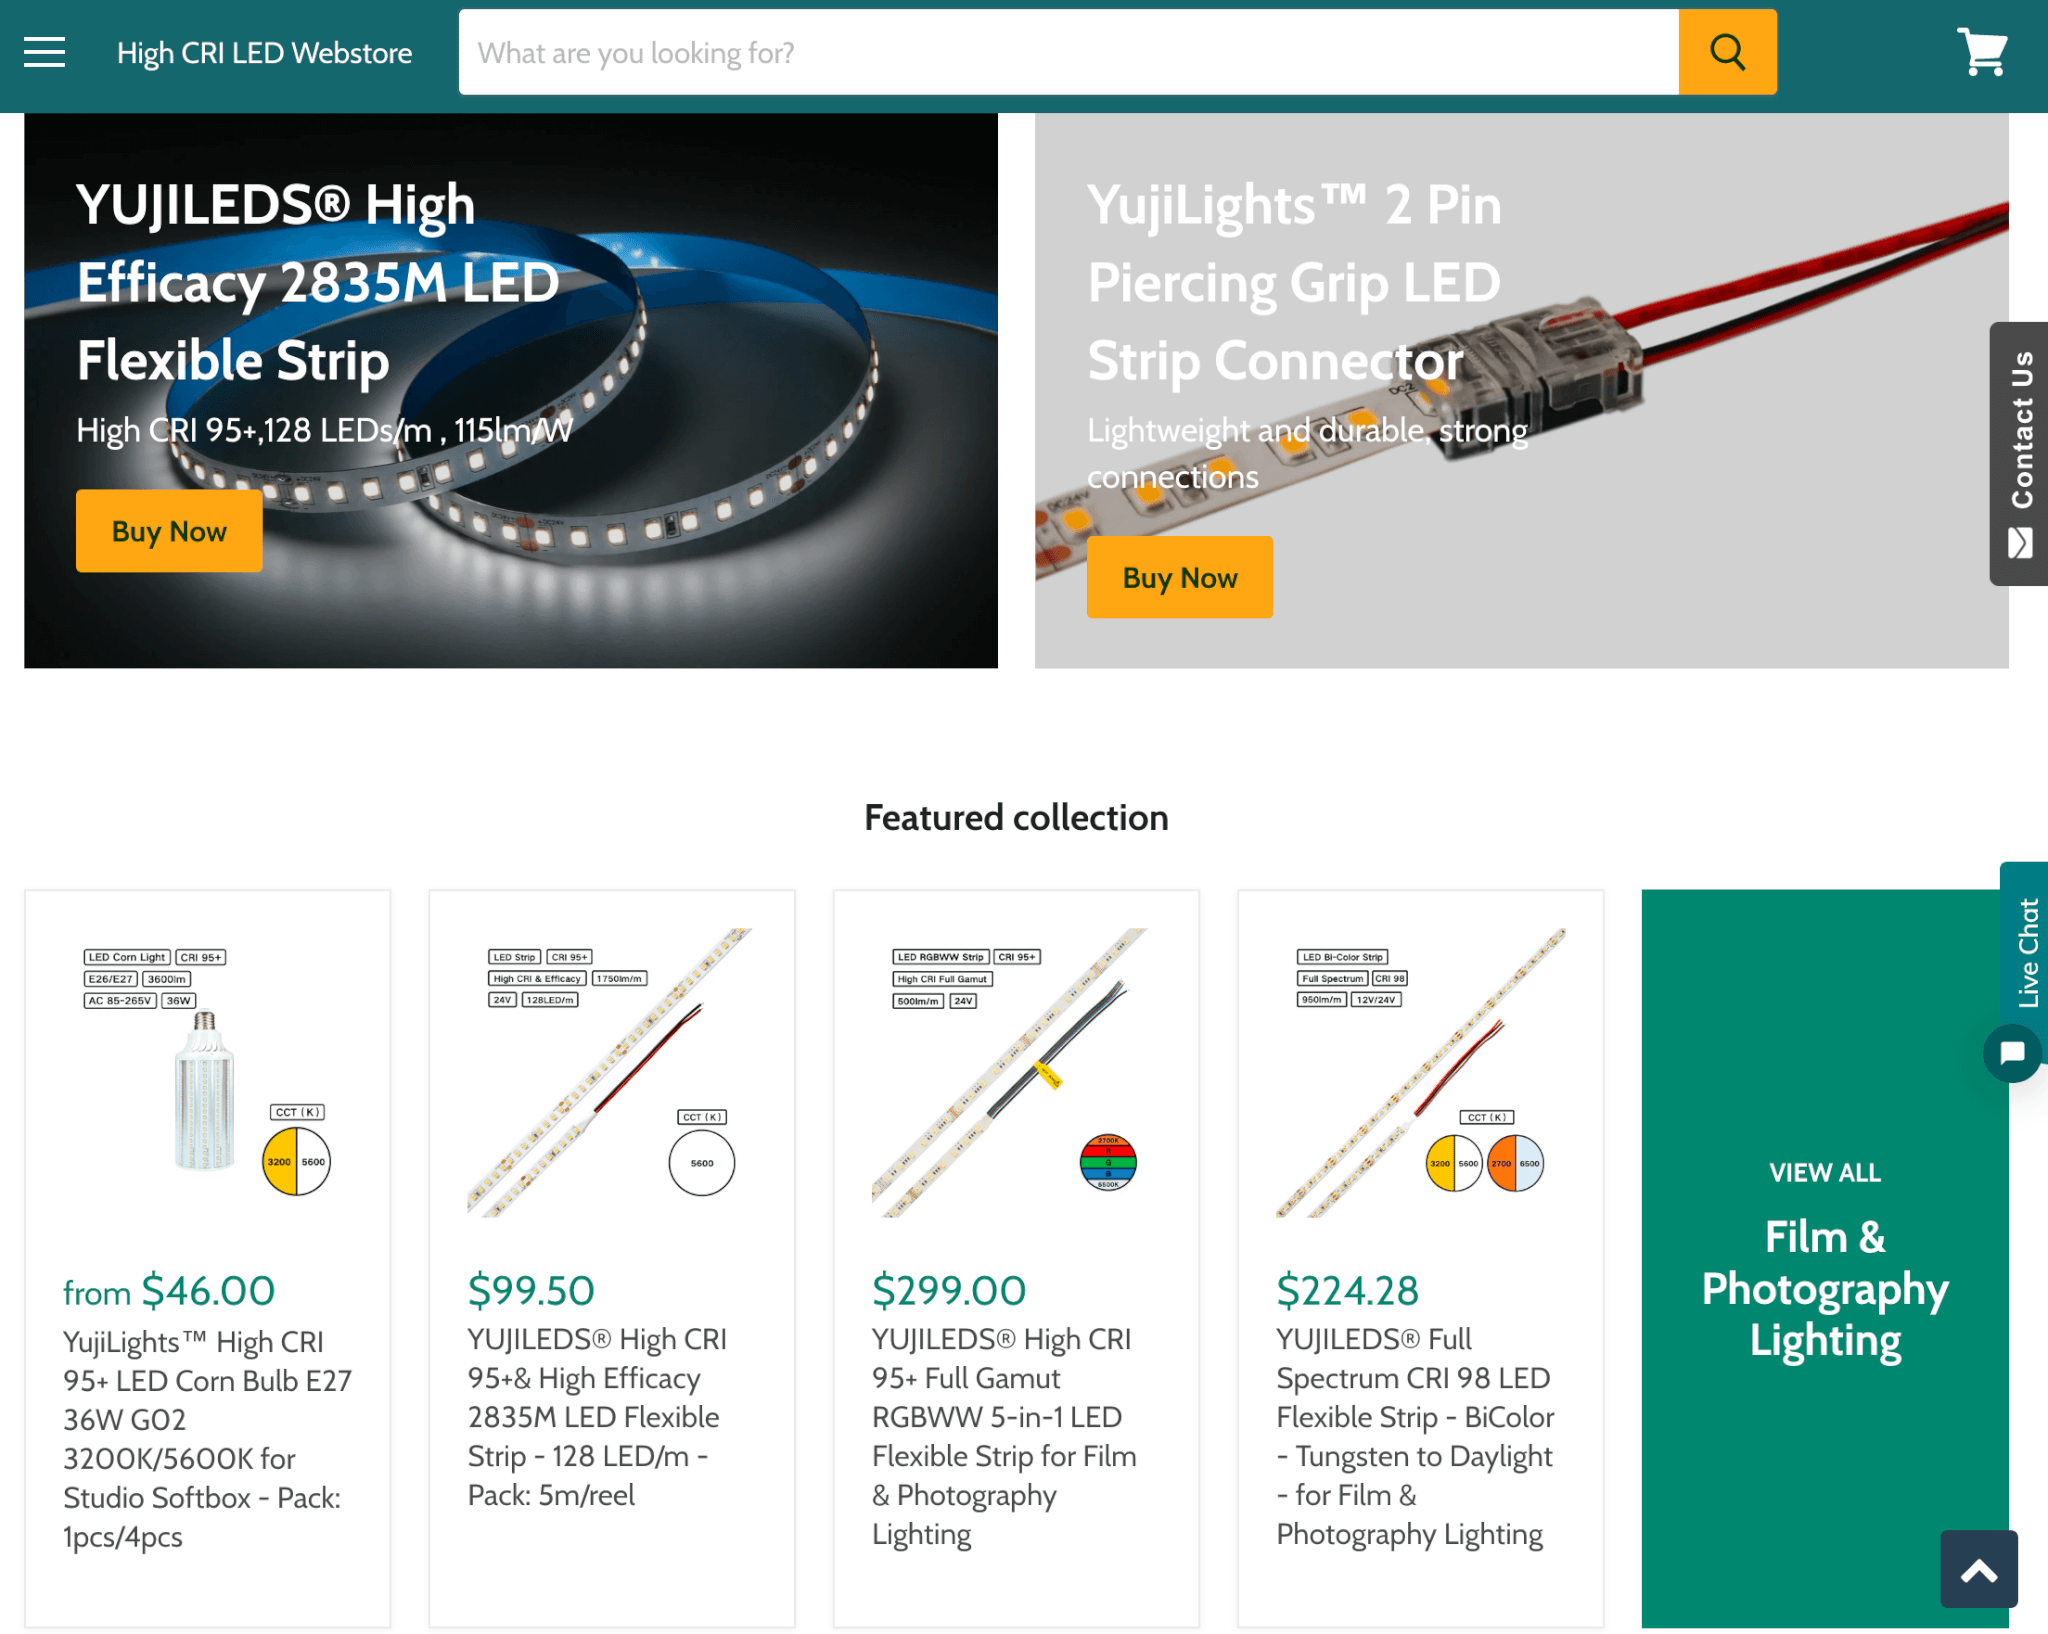 演色評価指数CRI(Ra)が95+の超高演色コーン型LED電球を買ってみたらすごく鮮やかに撮影できちゃう | kohacraftのblog